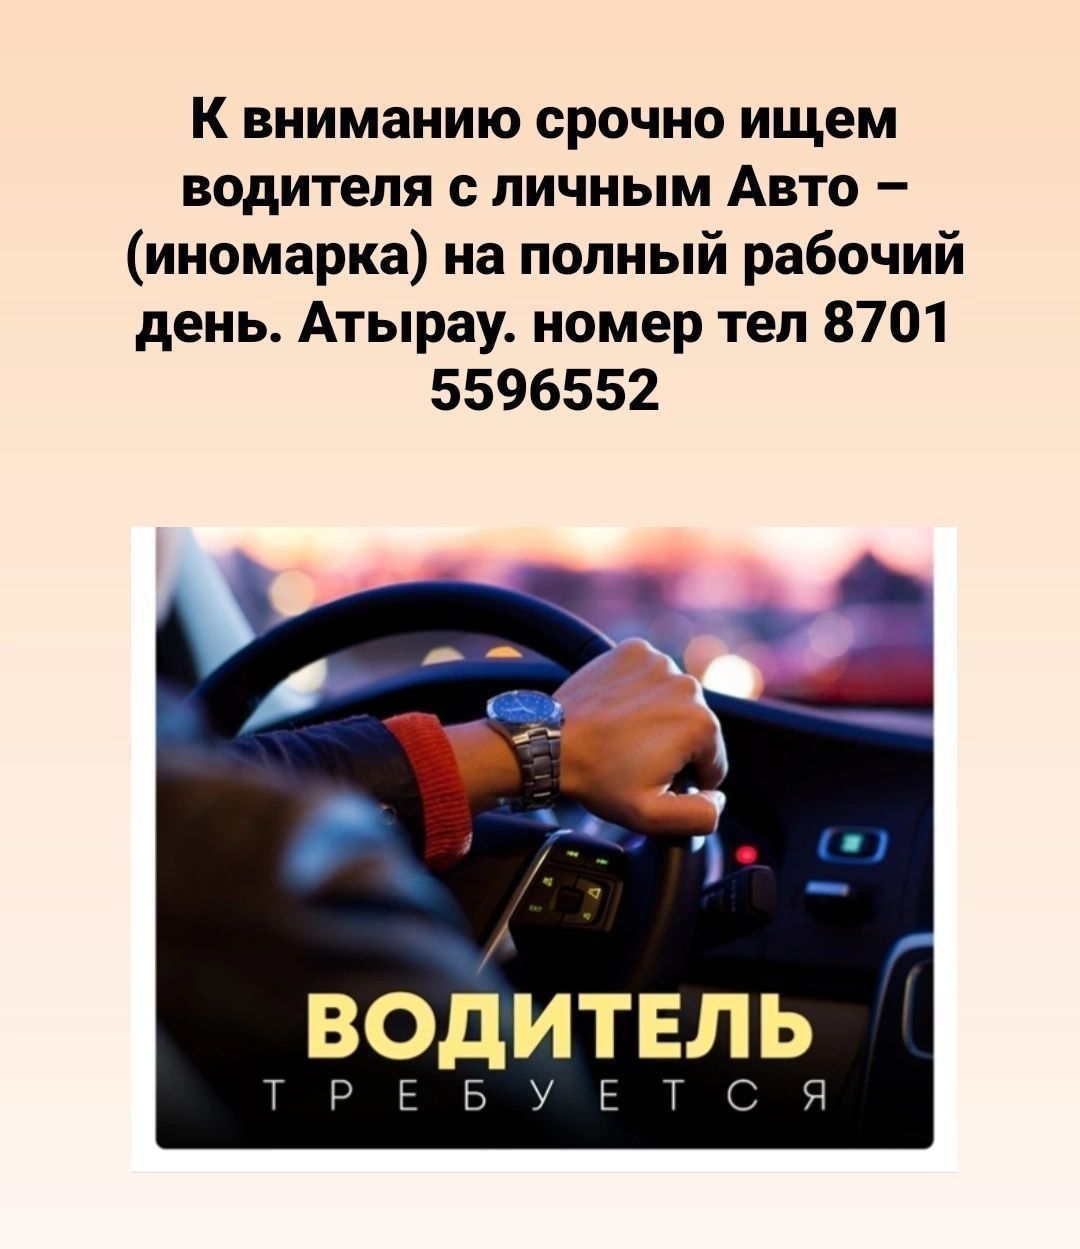 Найти водителя по номеру машины бесплатно в телеграмм фото 10